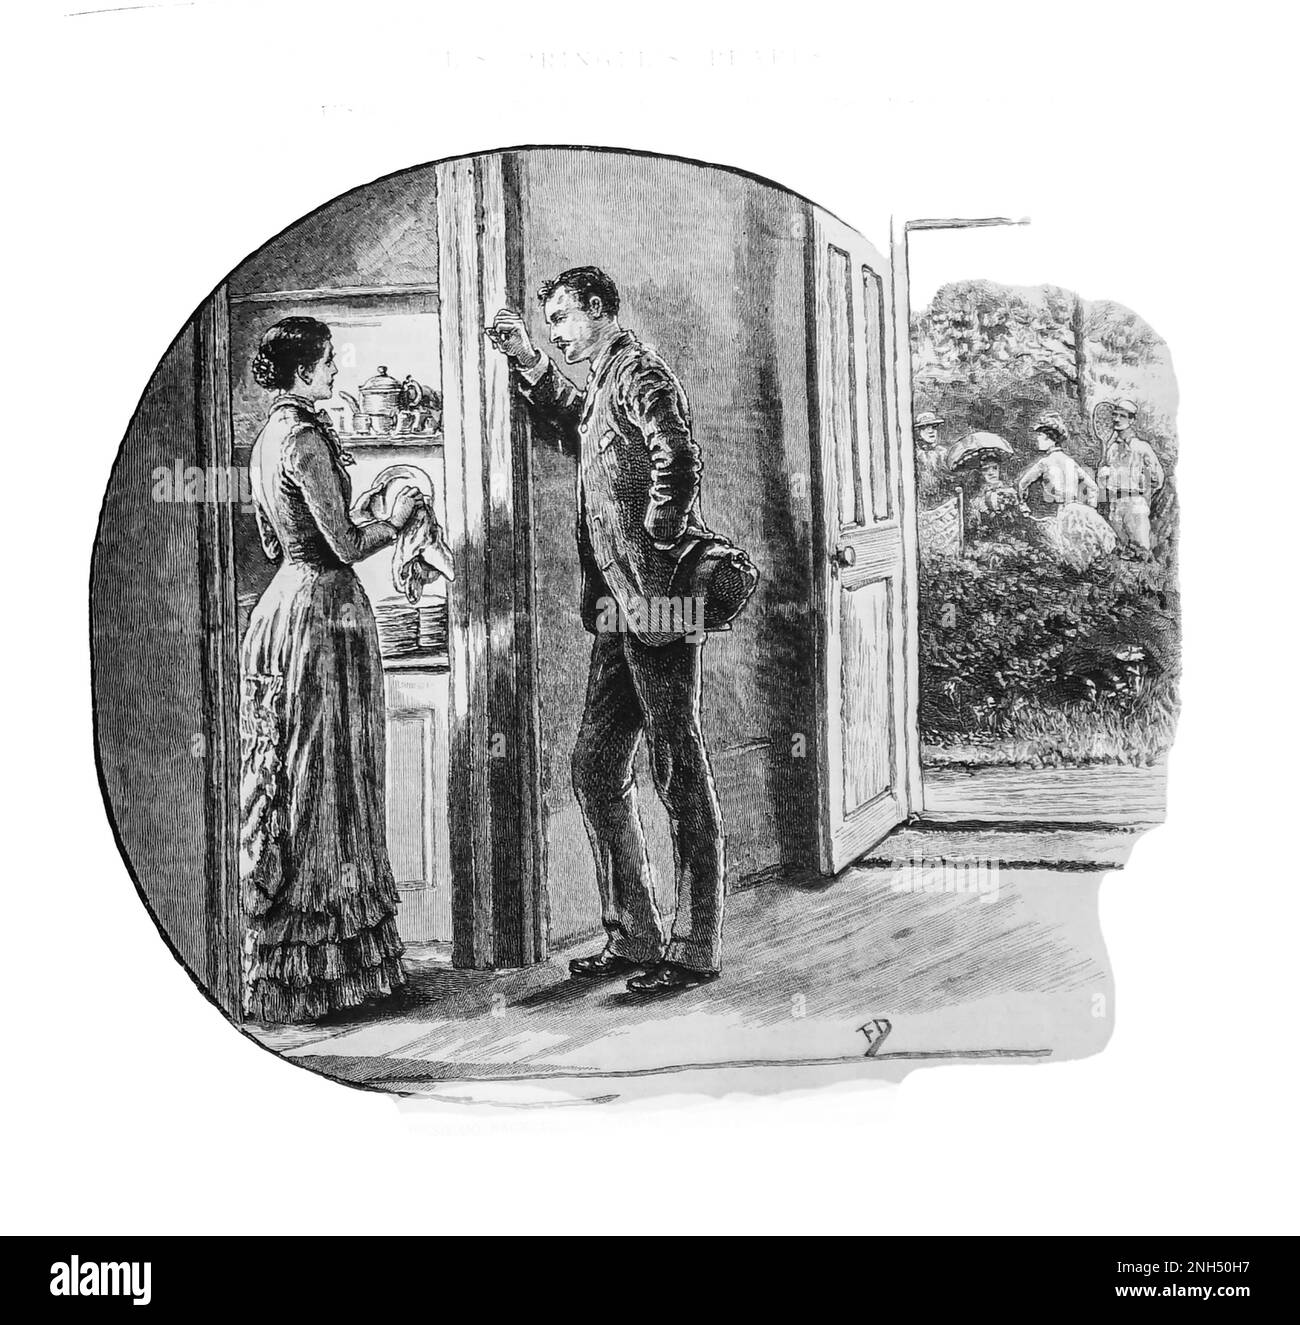 Uno schizzo del 19th ° secolo di una coppia, che asciuga i piatti in cucina, si appoggia sulla porta, in una conversazione intensa, dal Girls own Paper del 1888. Foto Stock